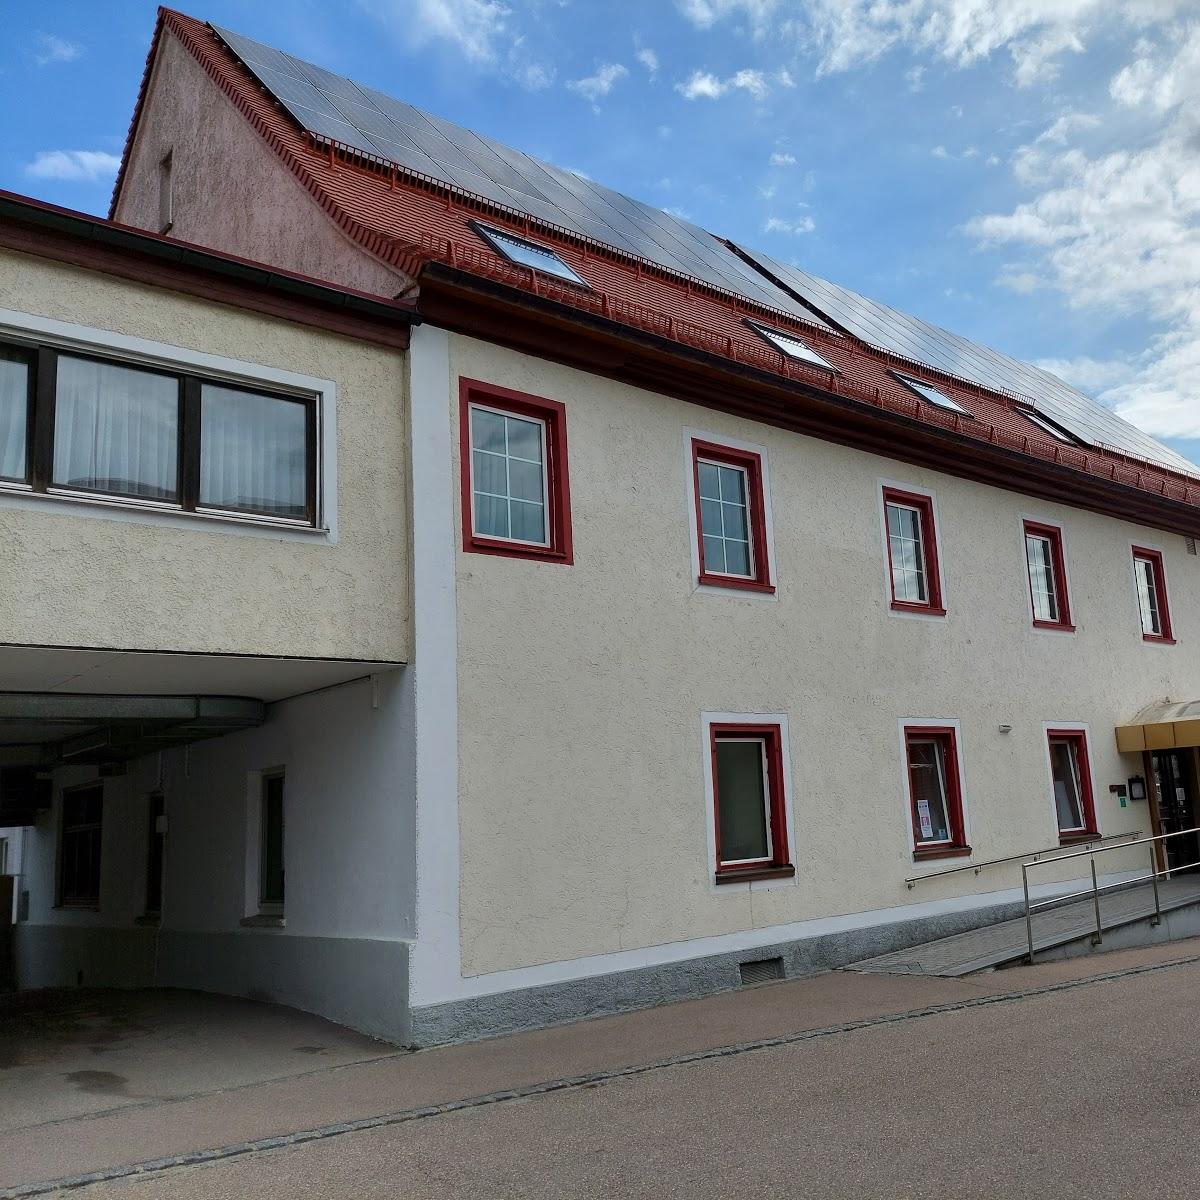 Restaurant "Landhotel Zur Kanne" in Neresheim